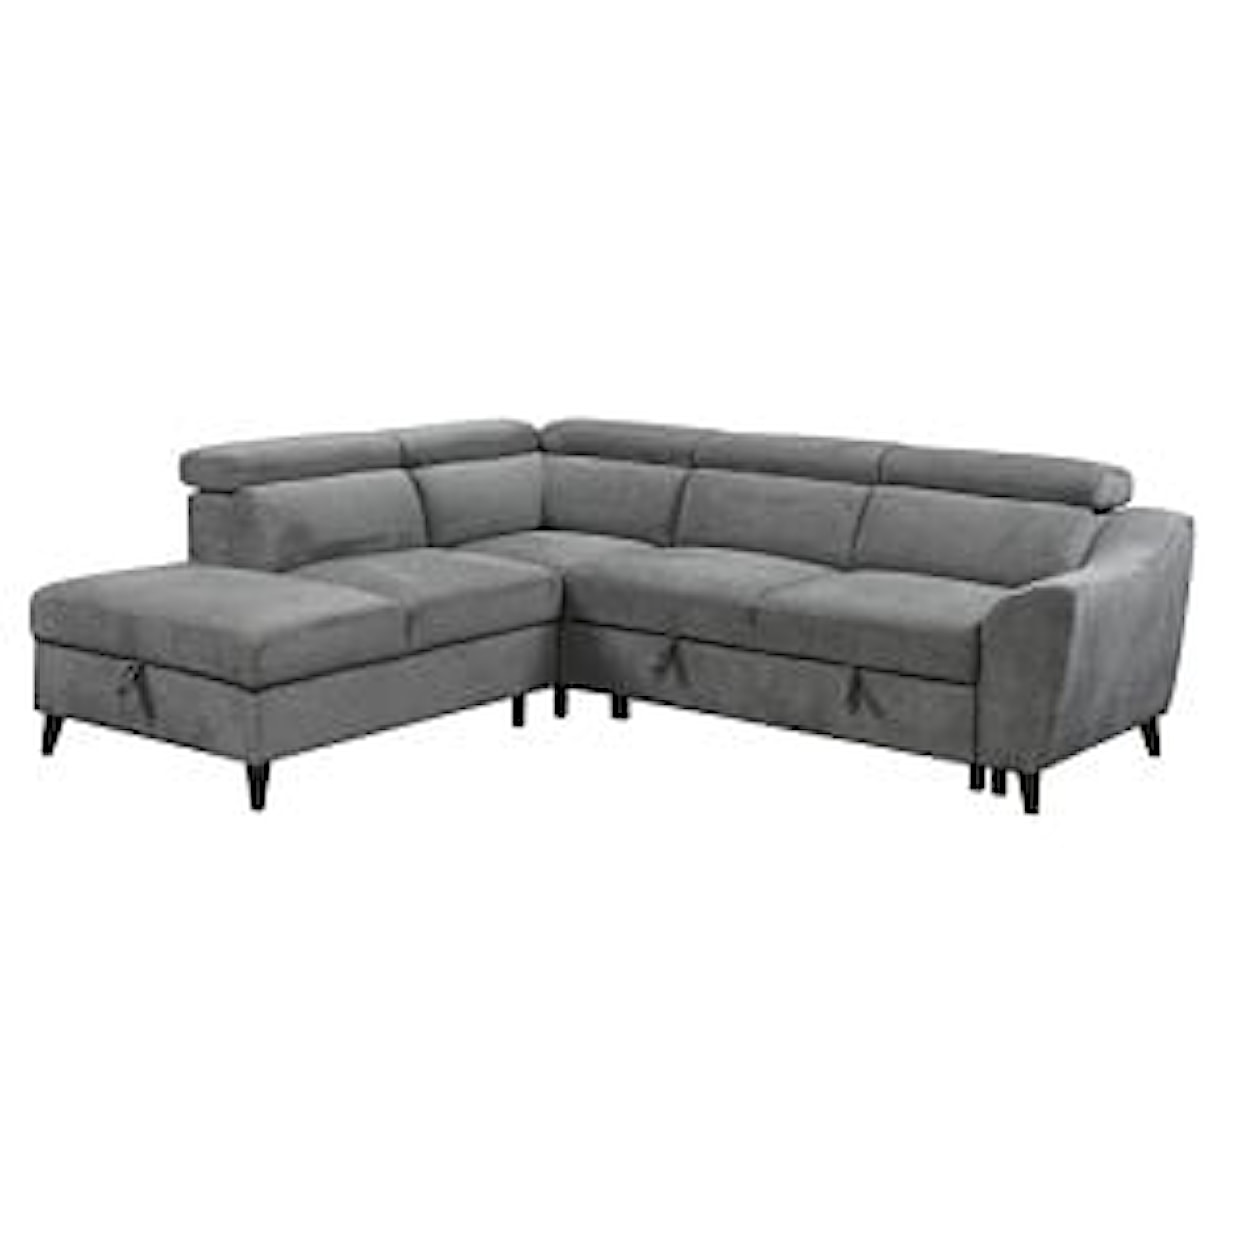 Acme Furniture Wrenley Sectional Sleeper Sofa